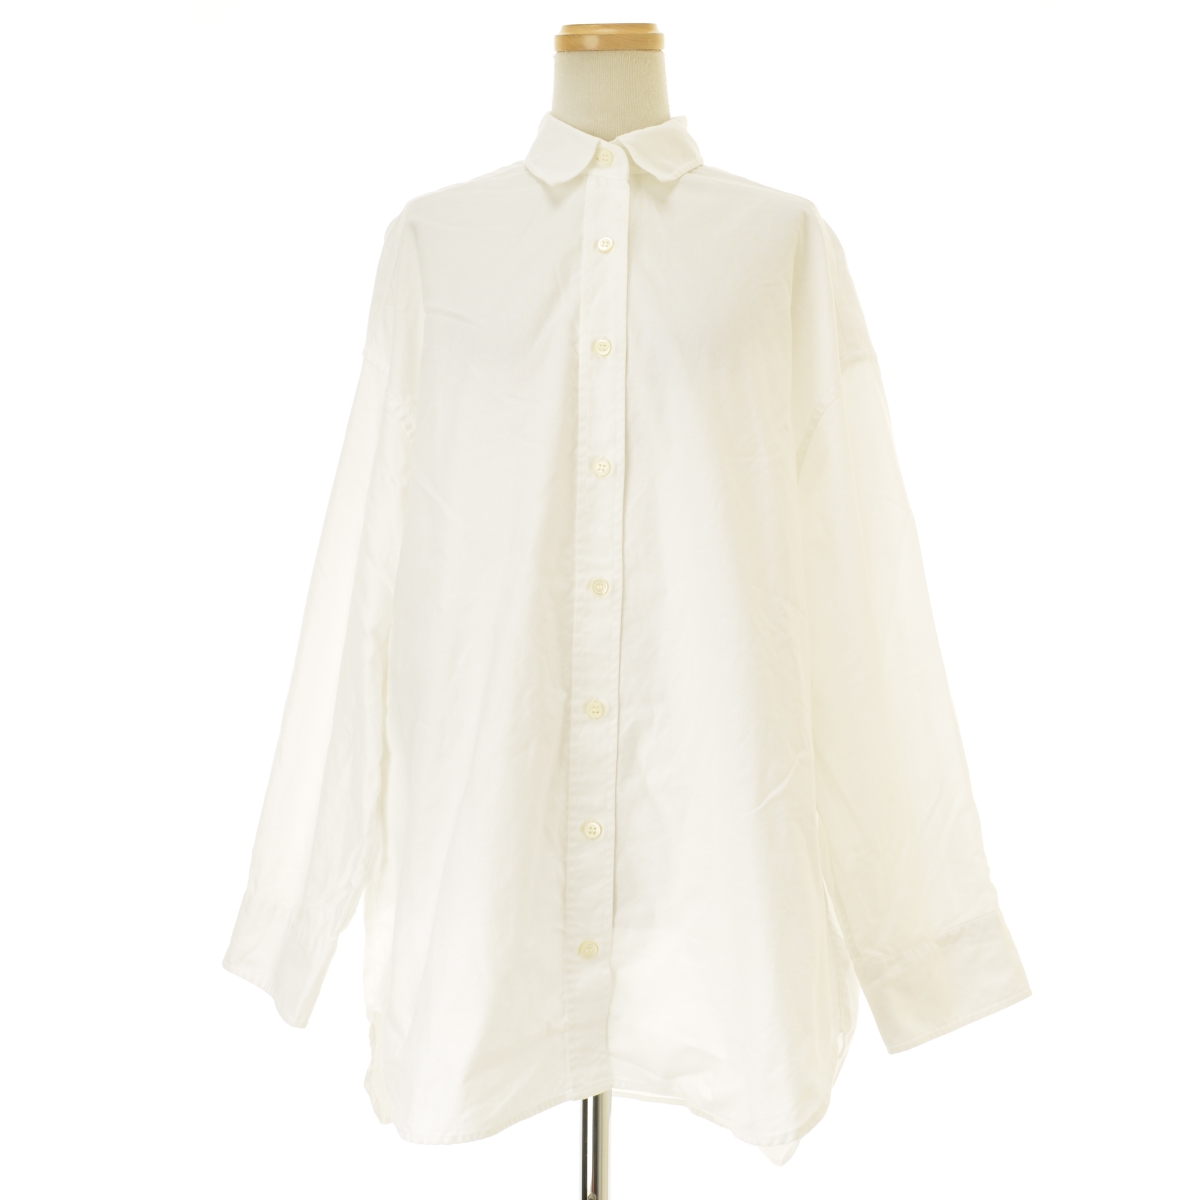 美品✨ドゥーズィエムクラス シャツ 春服 ブラウス 白シャツ 日本製 長袖